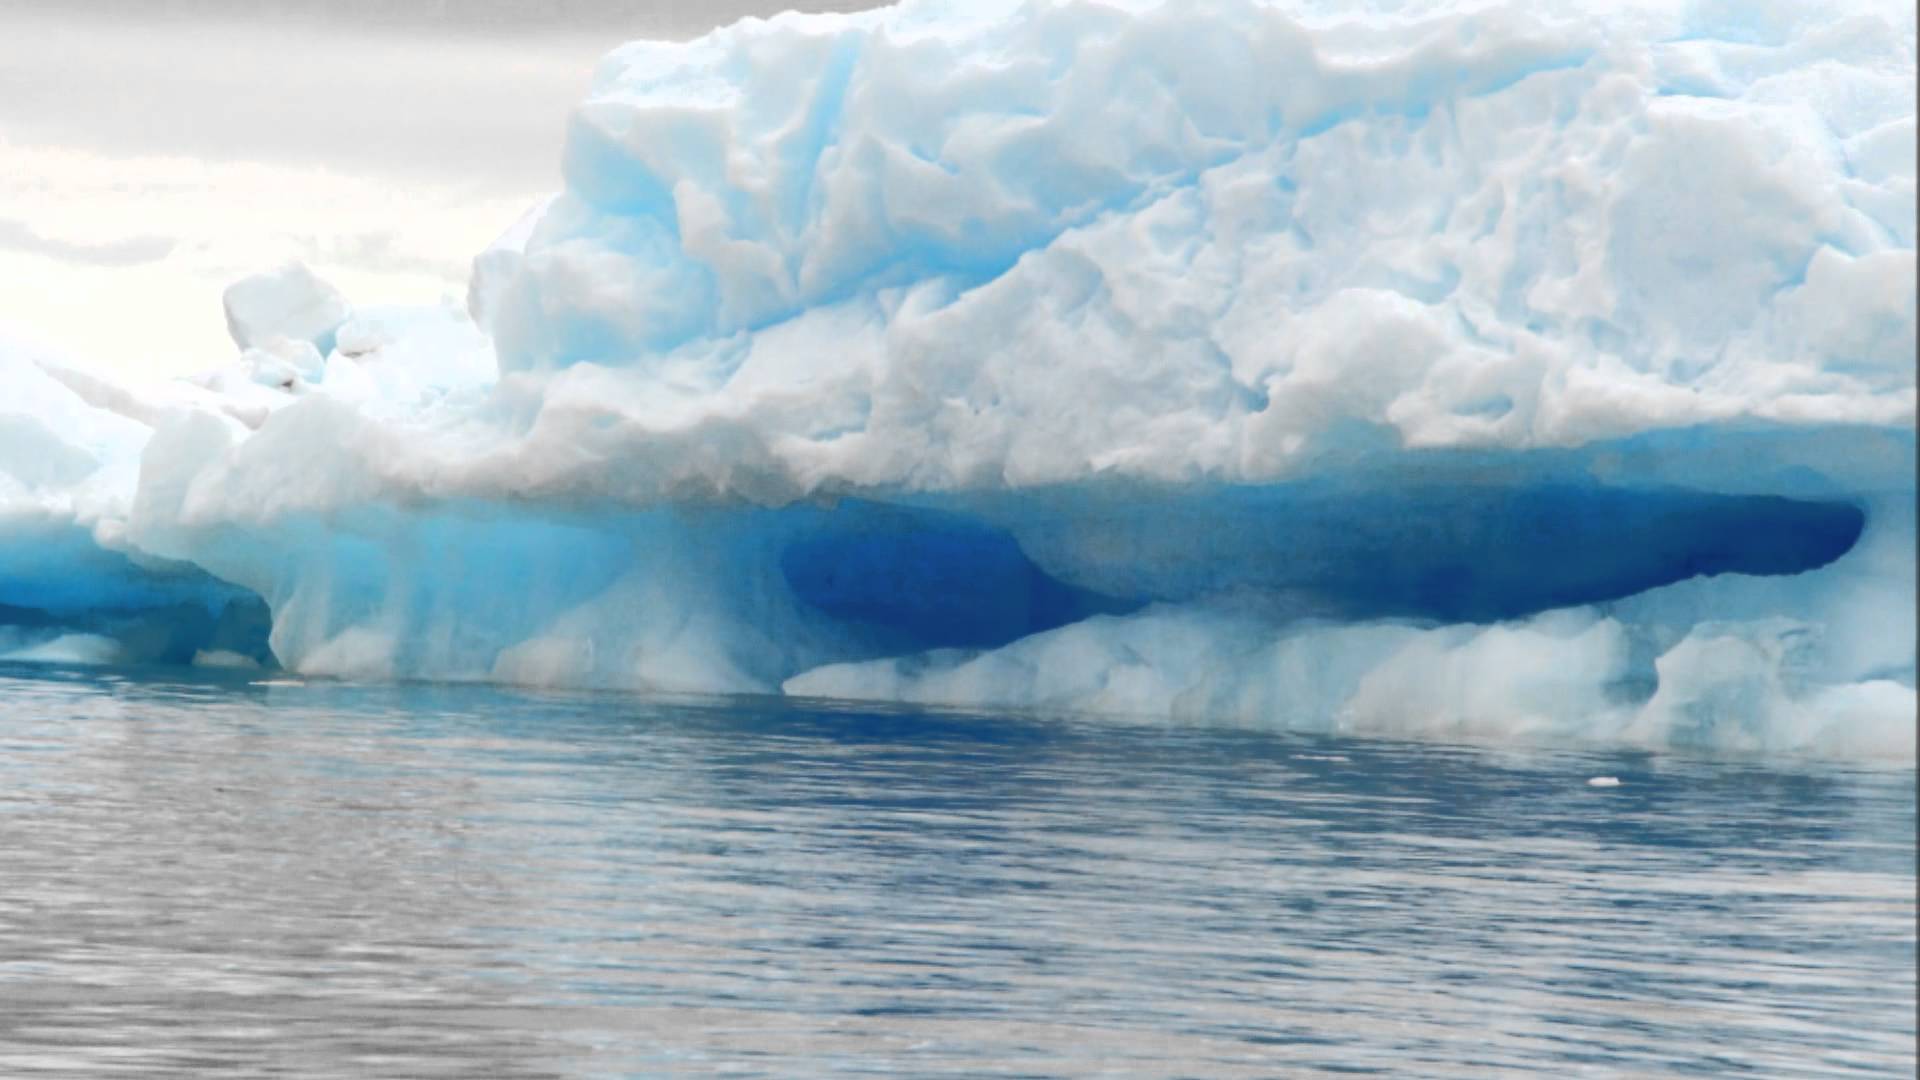 Antarctic Icebergs - YouTube